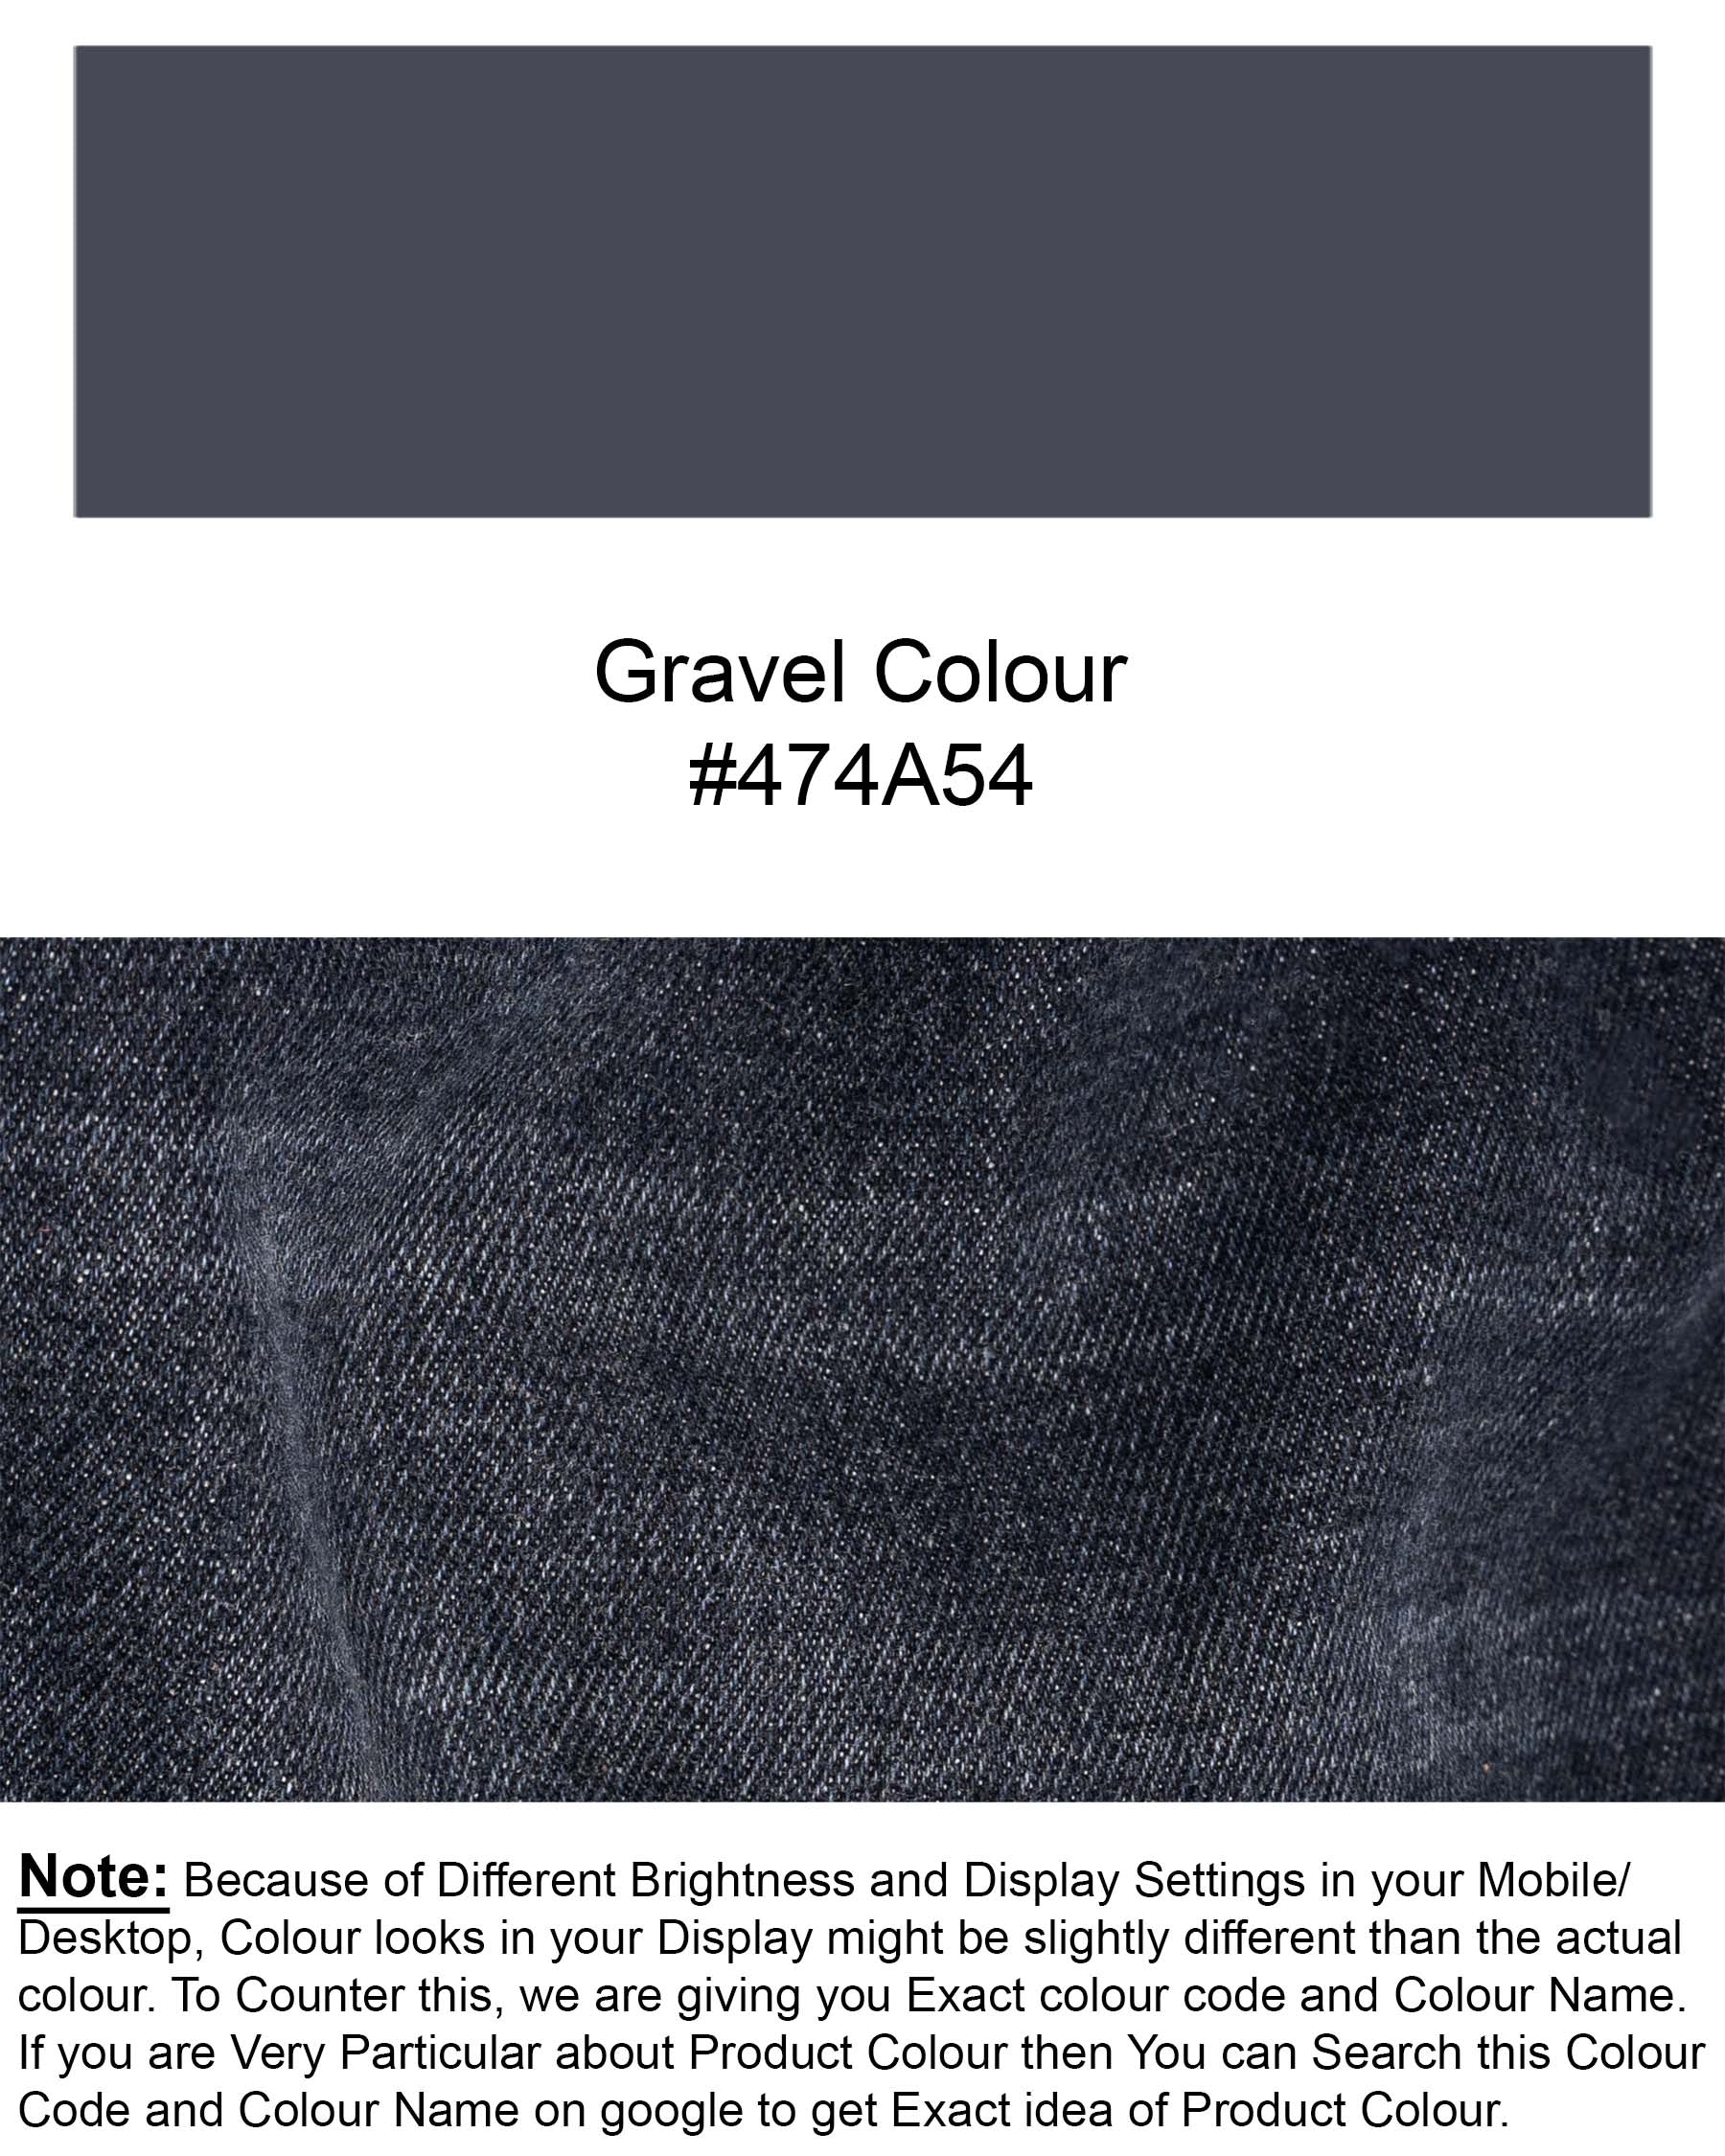 Gravel Grey Whiskering Wash Clean Look Stretchable Denim J138-30, J138-32, J138-34, J138-36, J138-38, J138-40